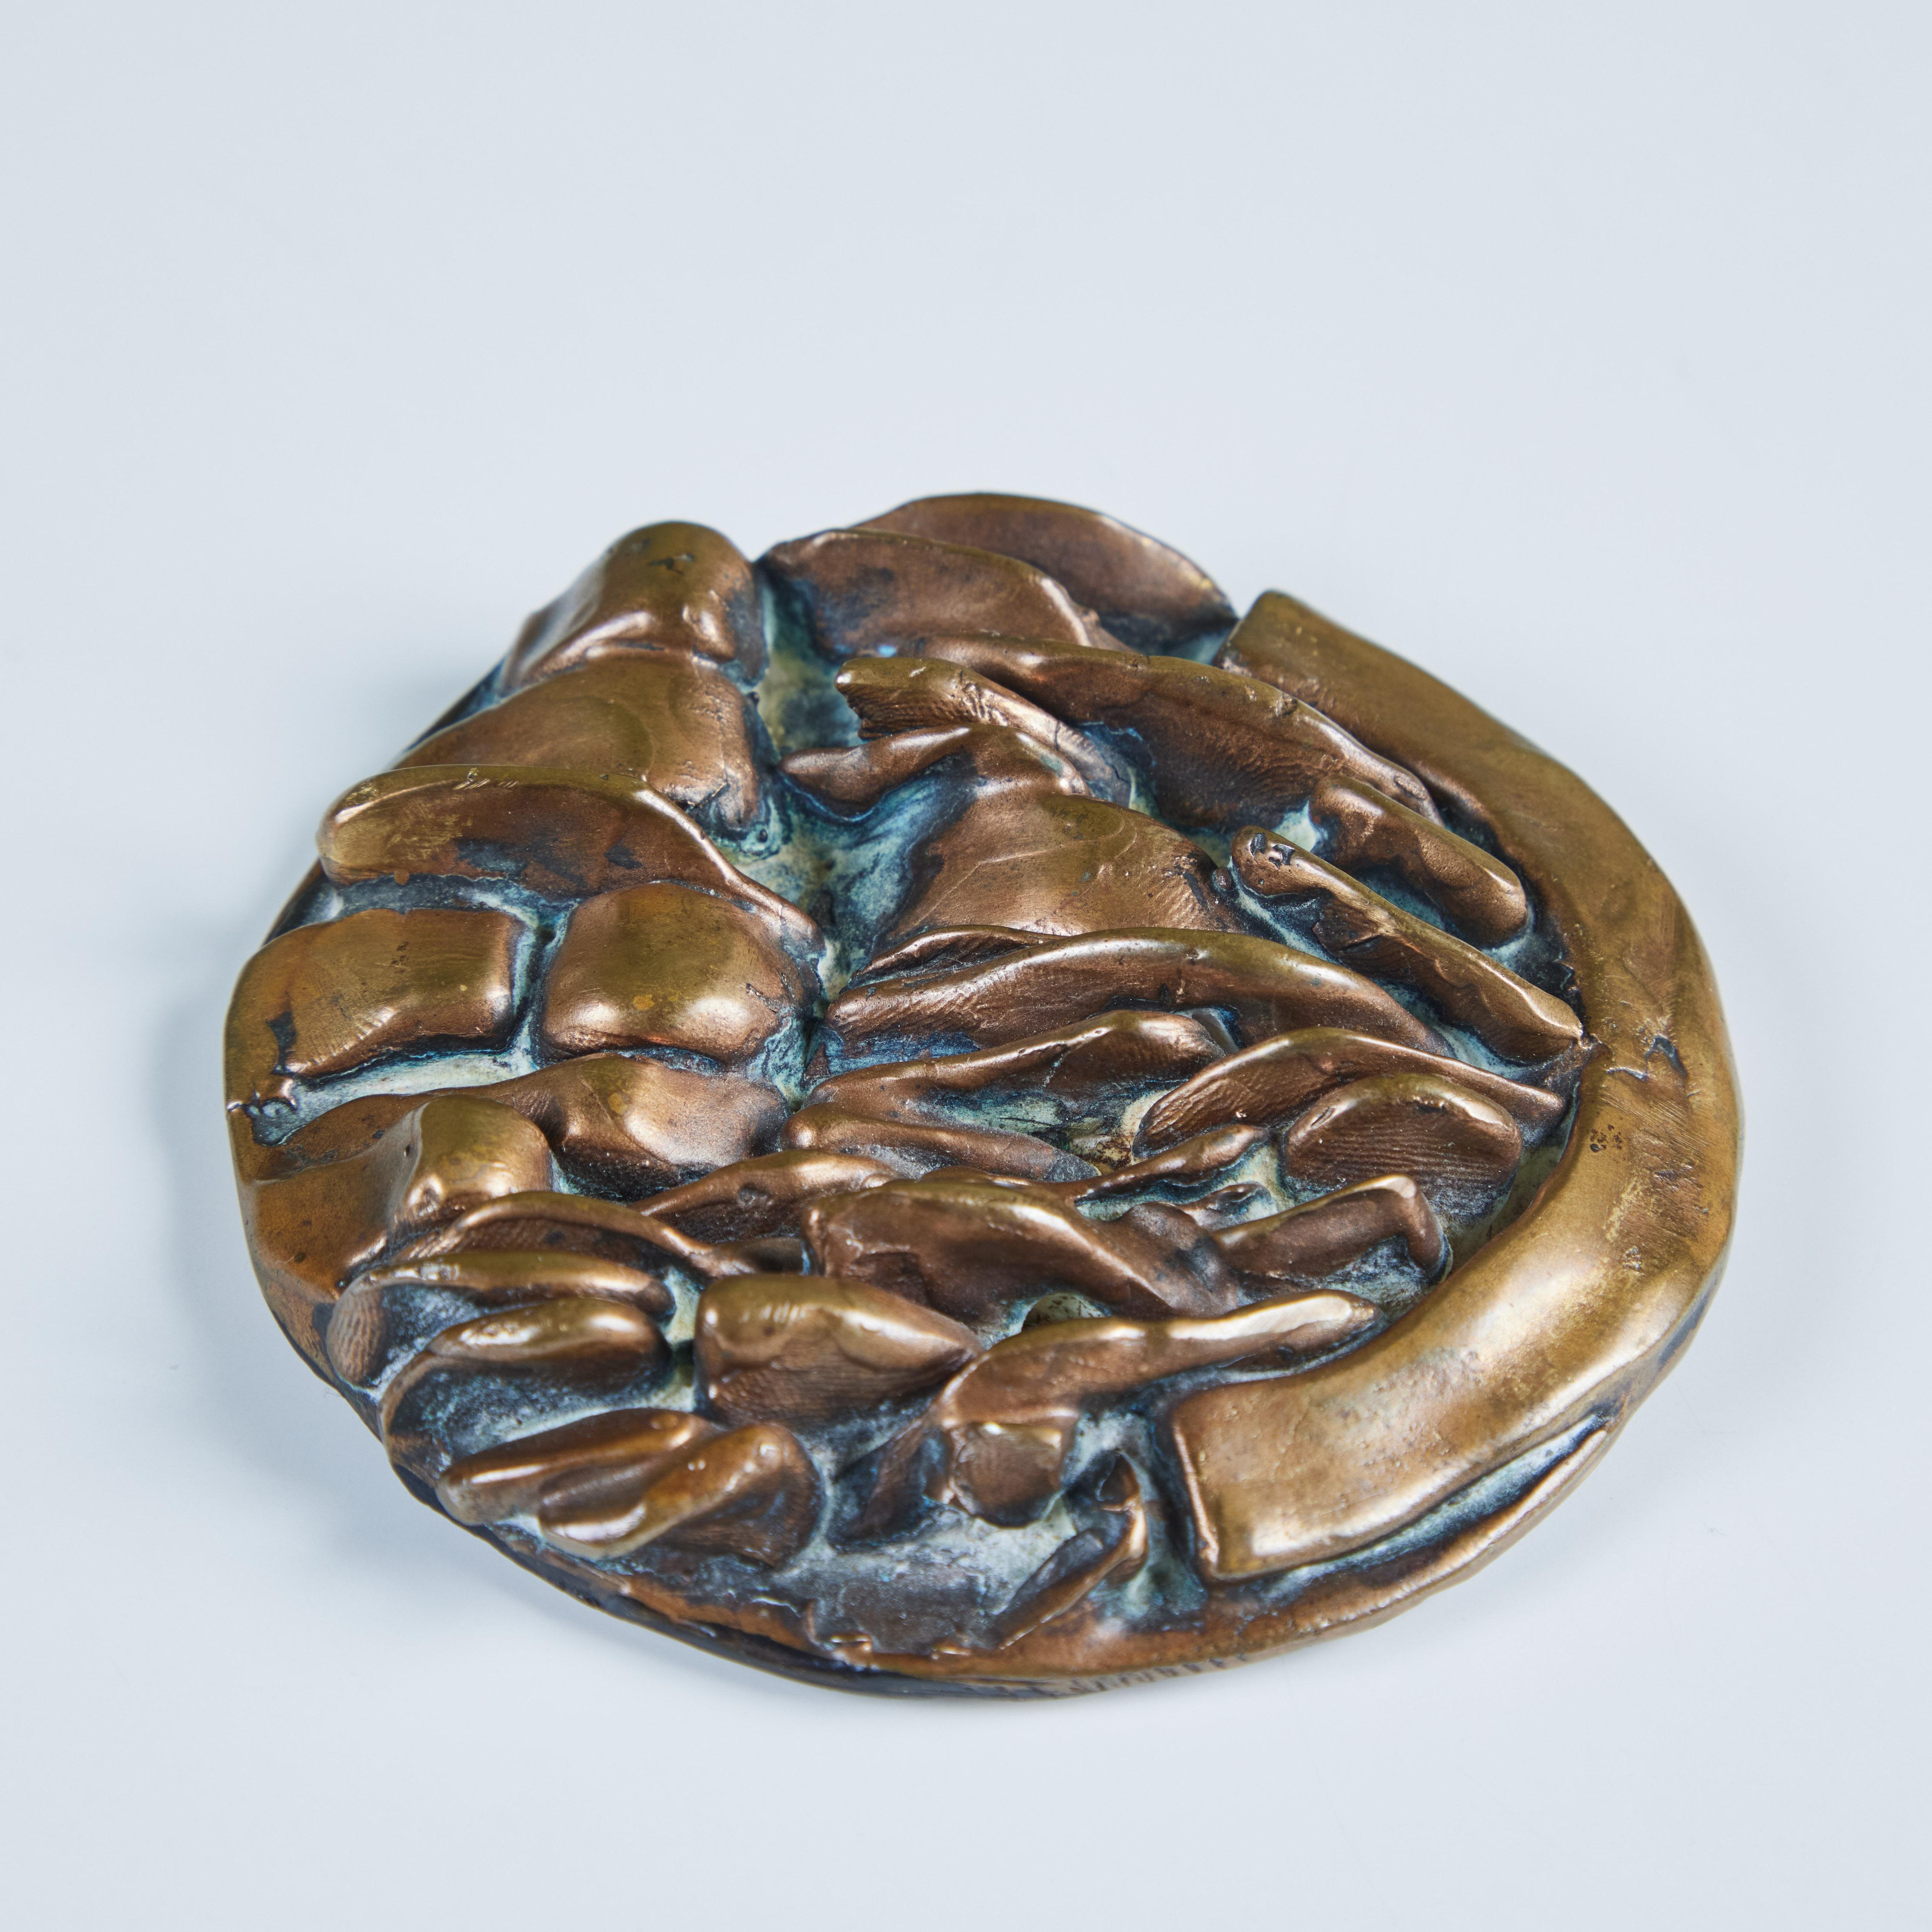 Médaillon décoratif ou presse-papier en bronze du sculpteur Riccardo Cassini, c.1979, Italie. Cette pièce circulaire en bronze présente une texture de bronze abstraite variable sur le dessus de la pièce.  Il conviendrait parfaitement comme